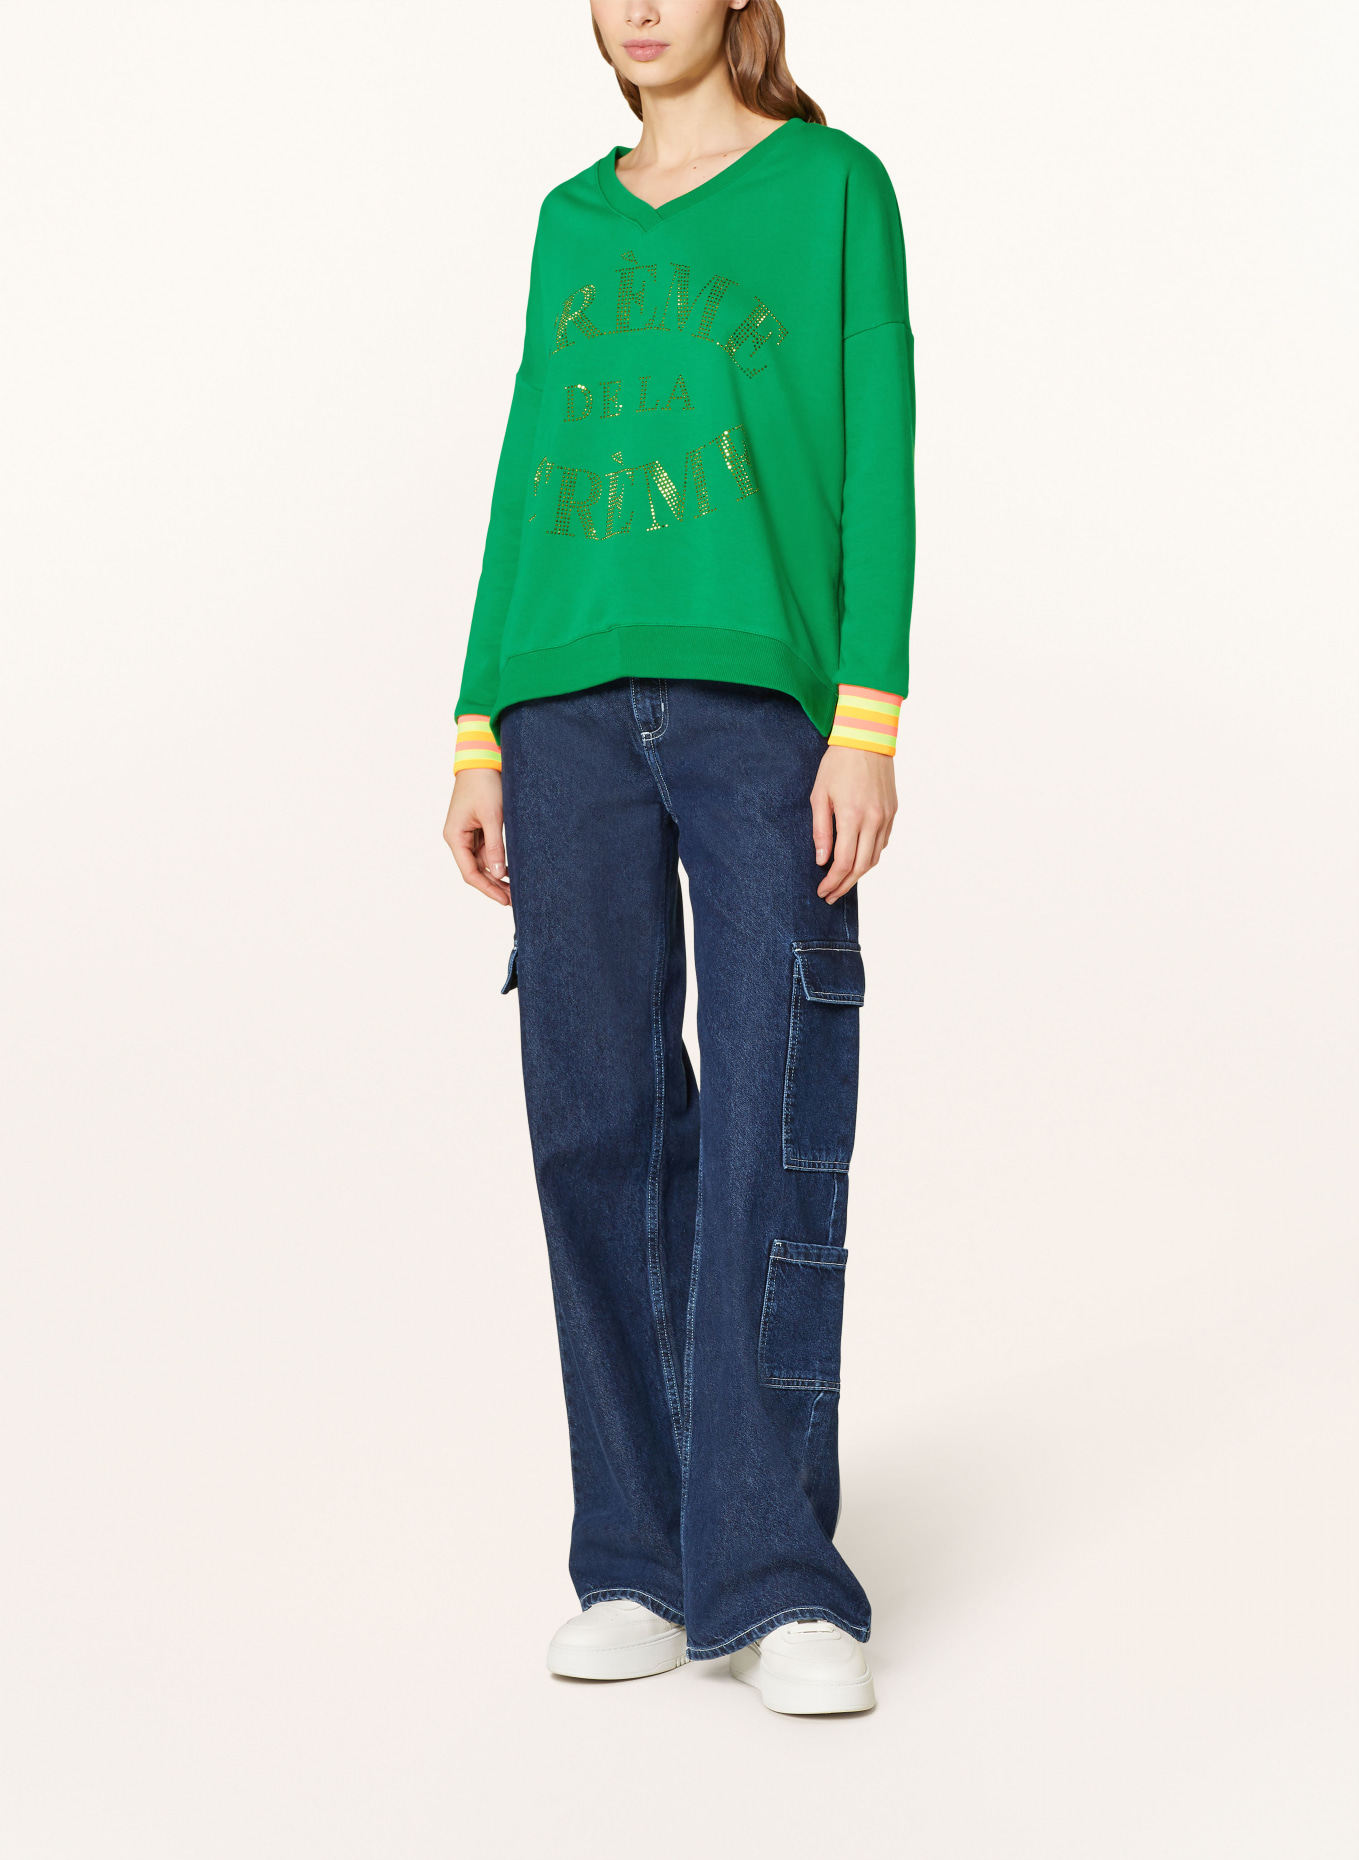 miss goodlife Sweatshirt mit Schmucksteinen, Farbe: GRÜN/ NEONPINK/ NEONORANGE (Bild 2)